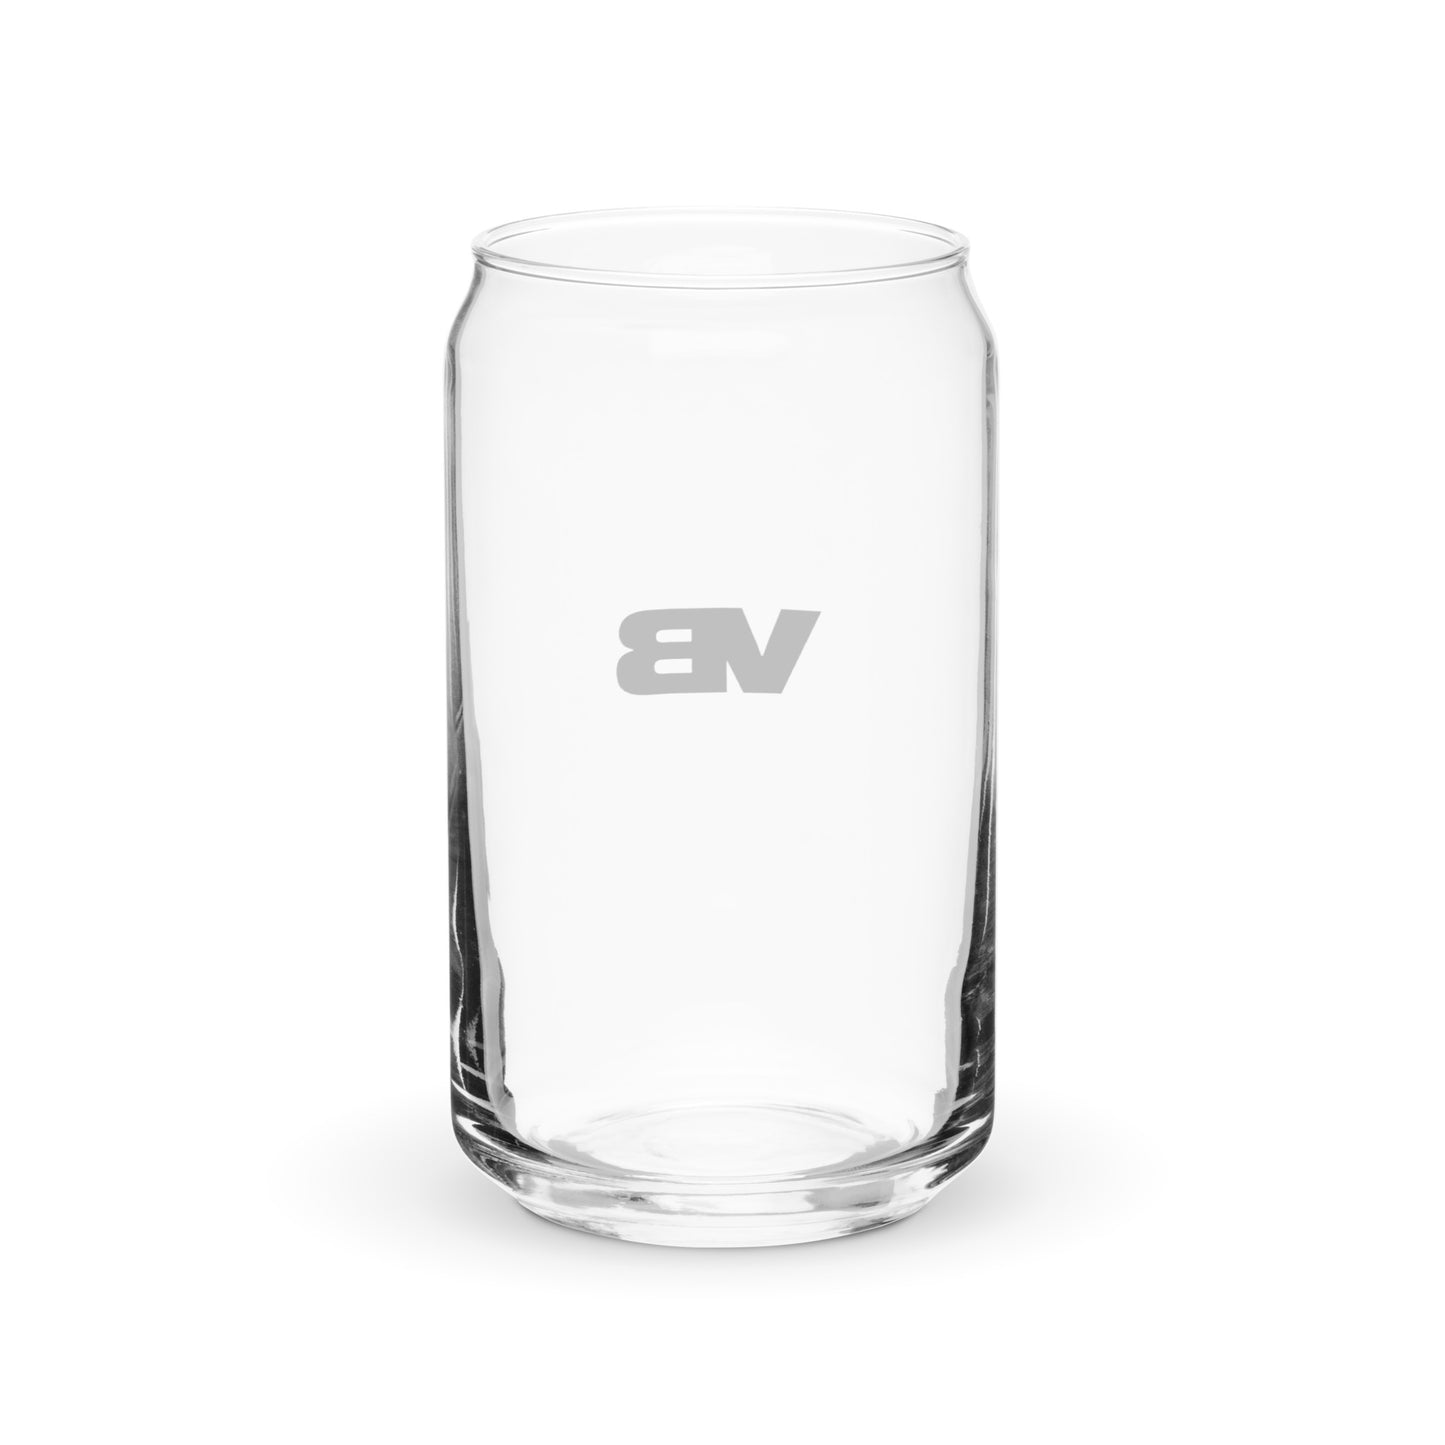 Villa Blvd Beverage Glasses